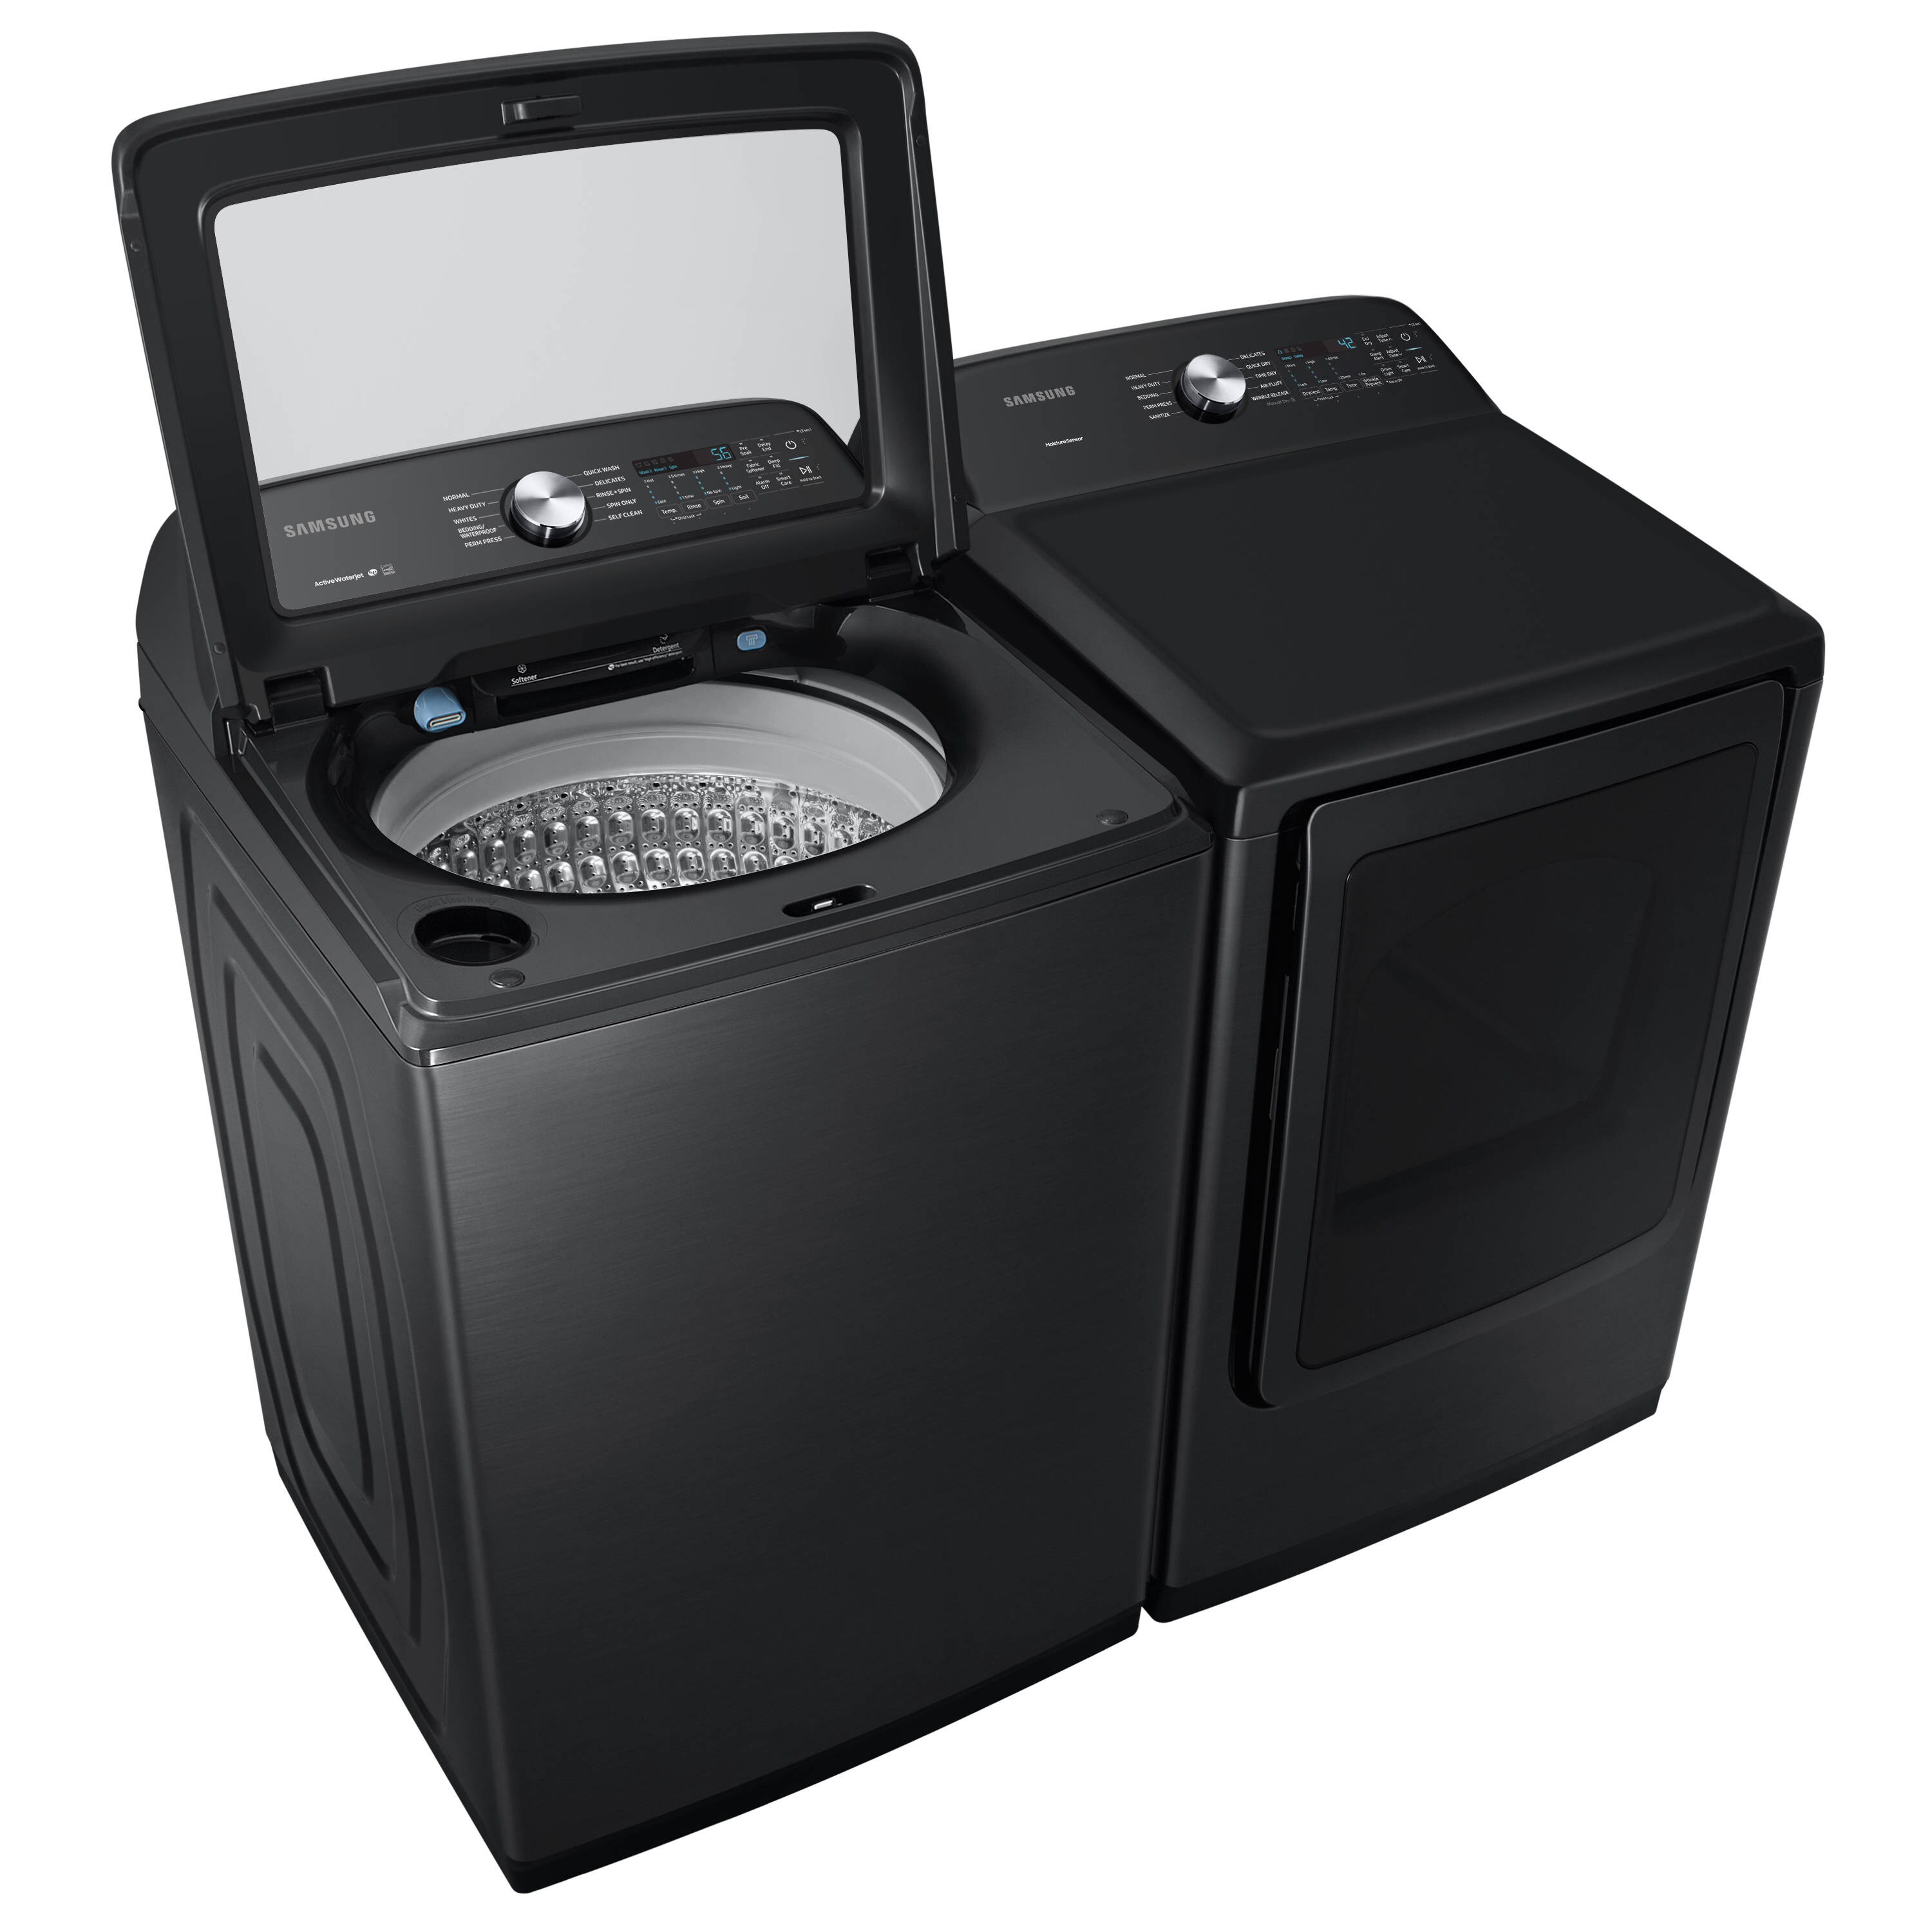 Samsung 7.4-cu ft Electric Dryer (Brushed Black) at Lowes.com